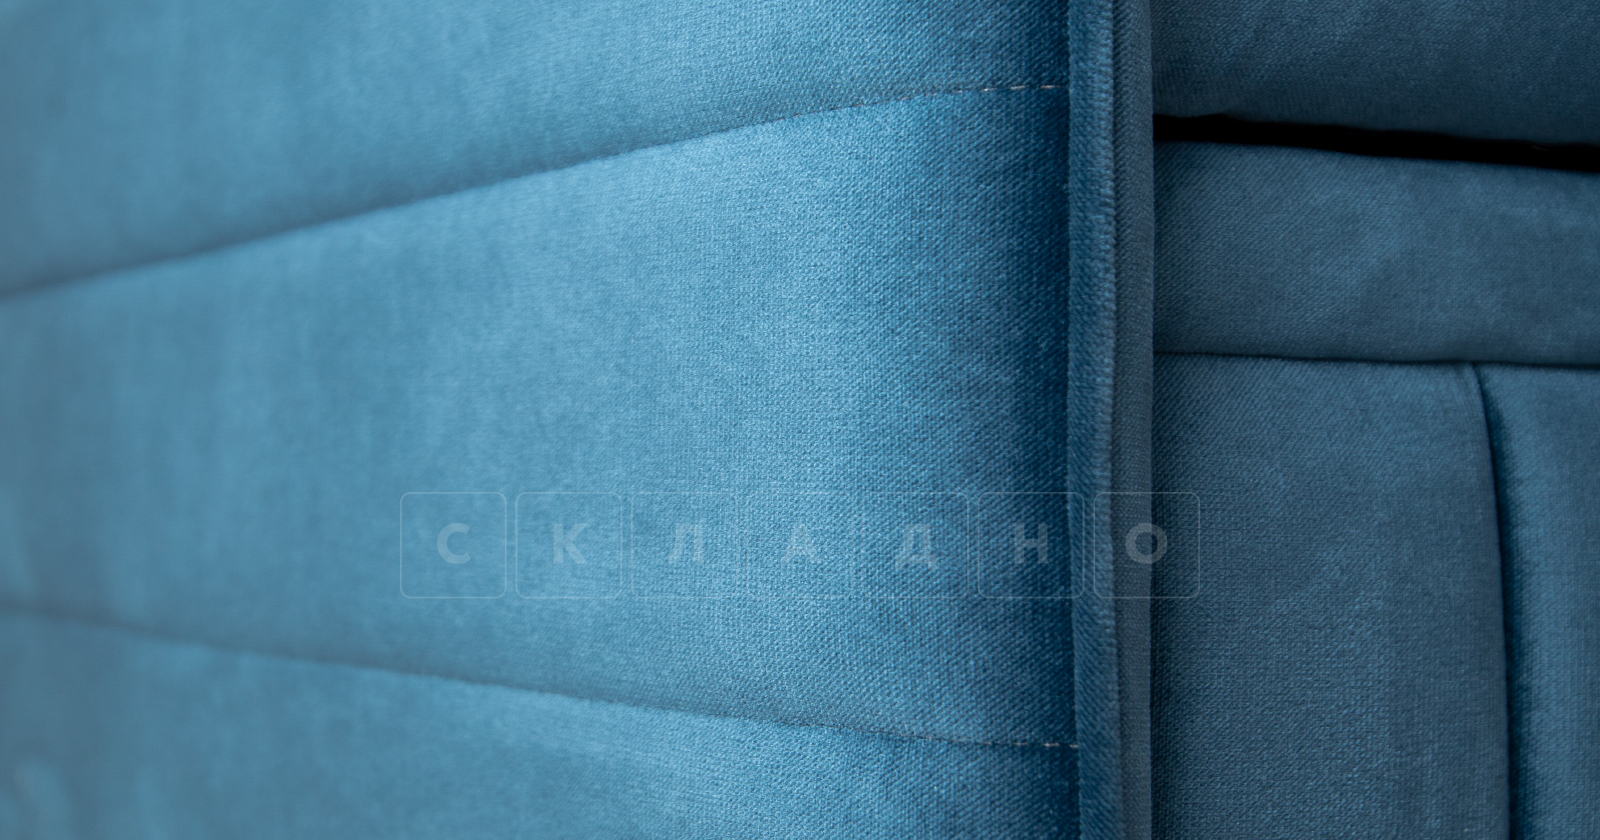 Диван-кровать Дикси синий фото 9 | интернет-магазин Складно